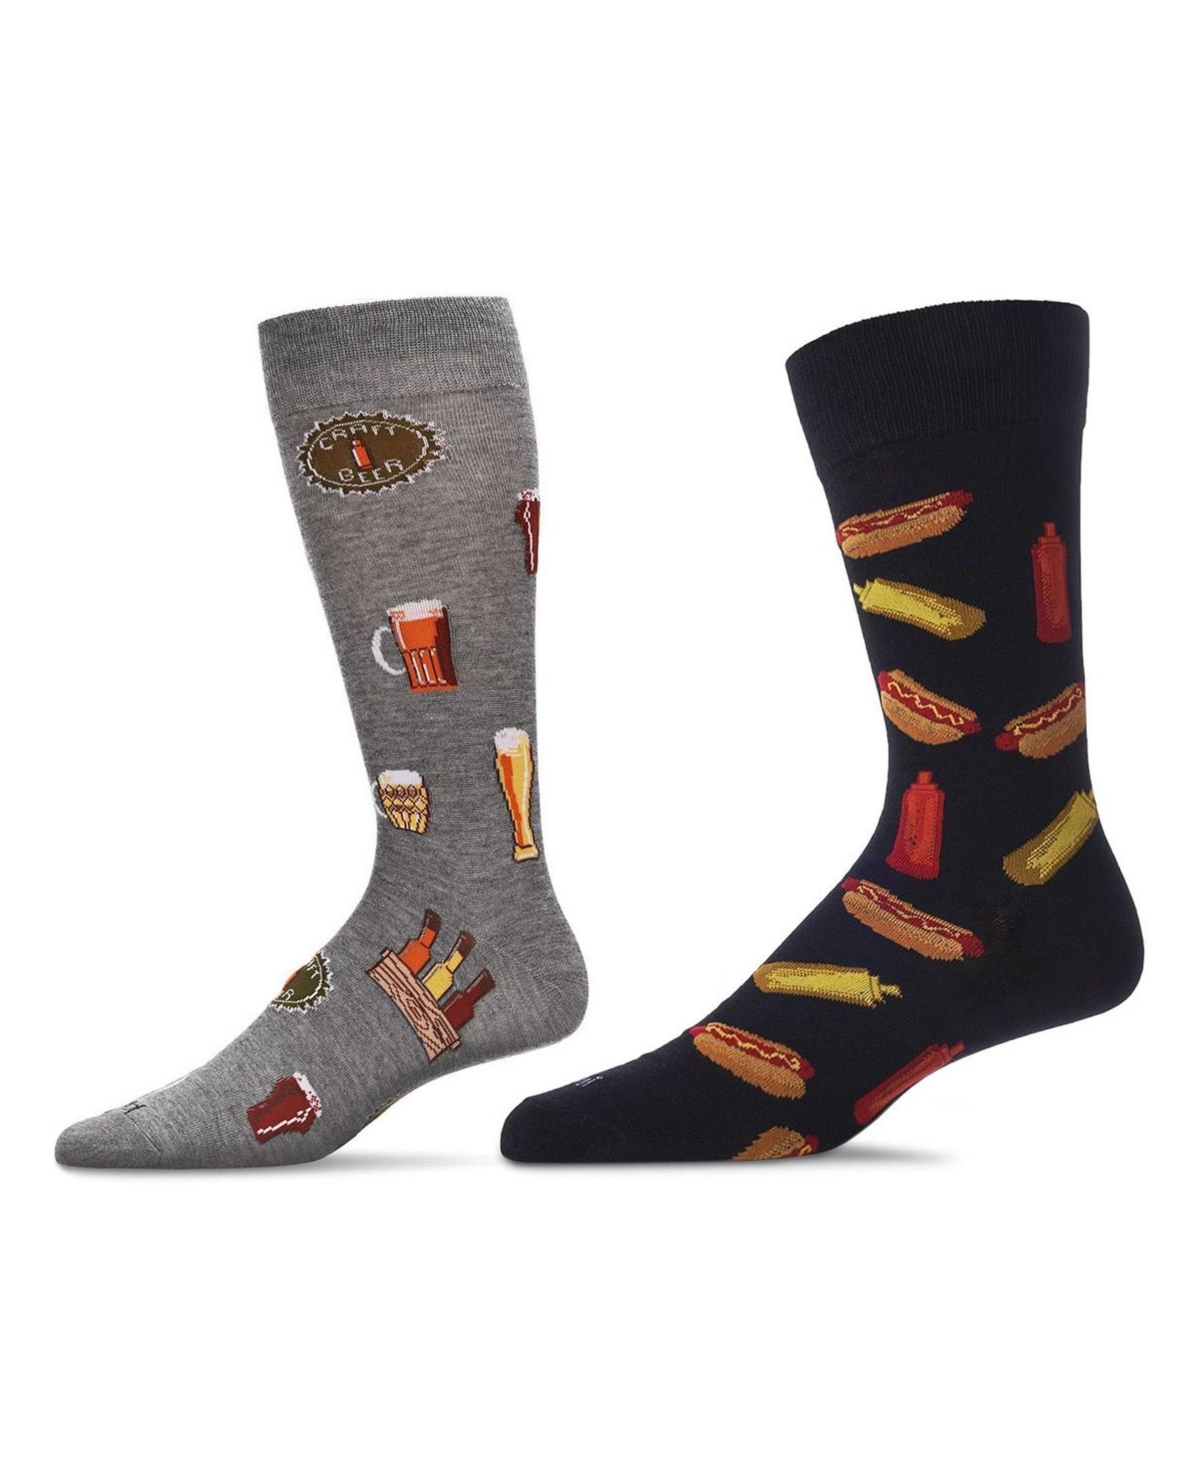 Men's Pair Novelty Socks, Pack of 2 - Black-Crockery